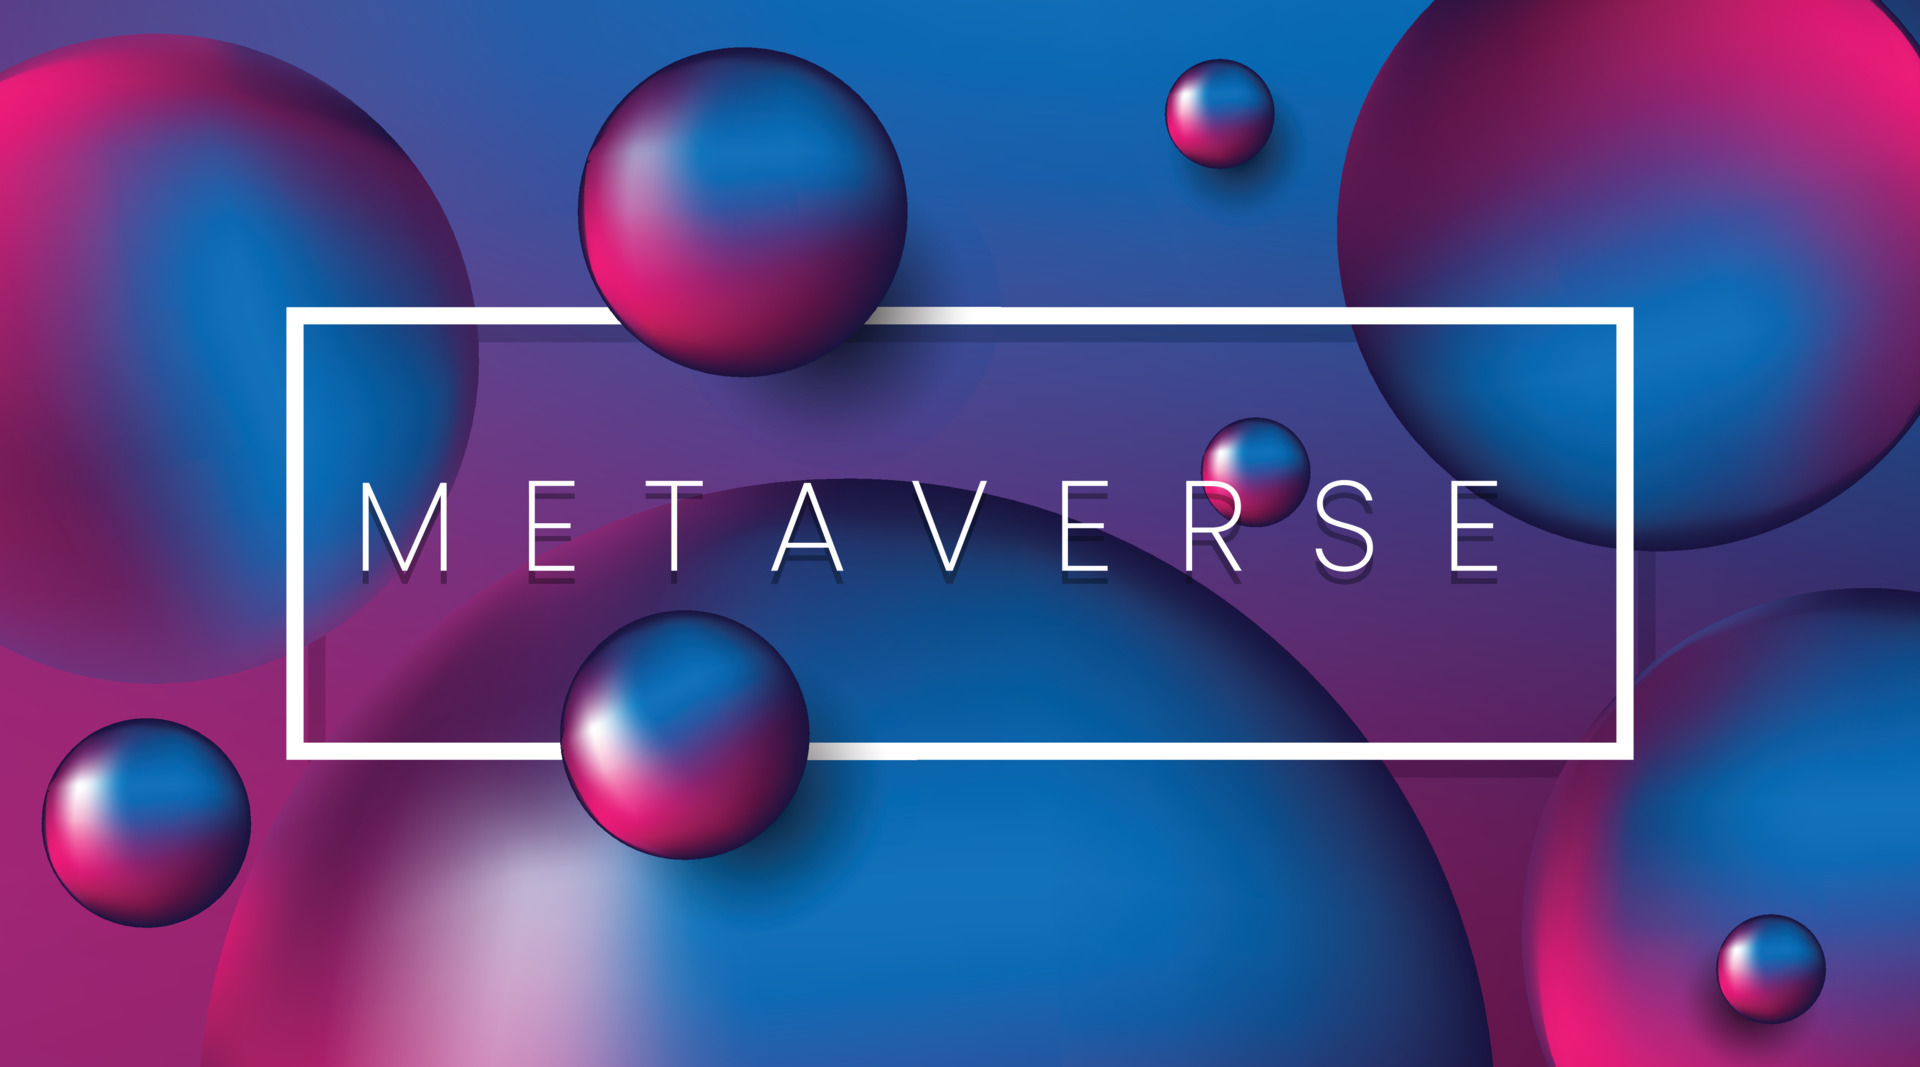 这是一个具有未来感的图像，展示了多个浮动的彩色球体和中间带有“METAVERSE”字样的白色矩形框。色彩鲜艳，充满科技感。